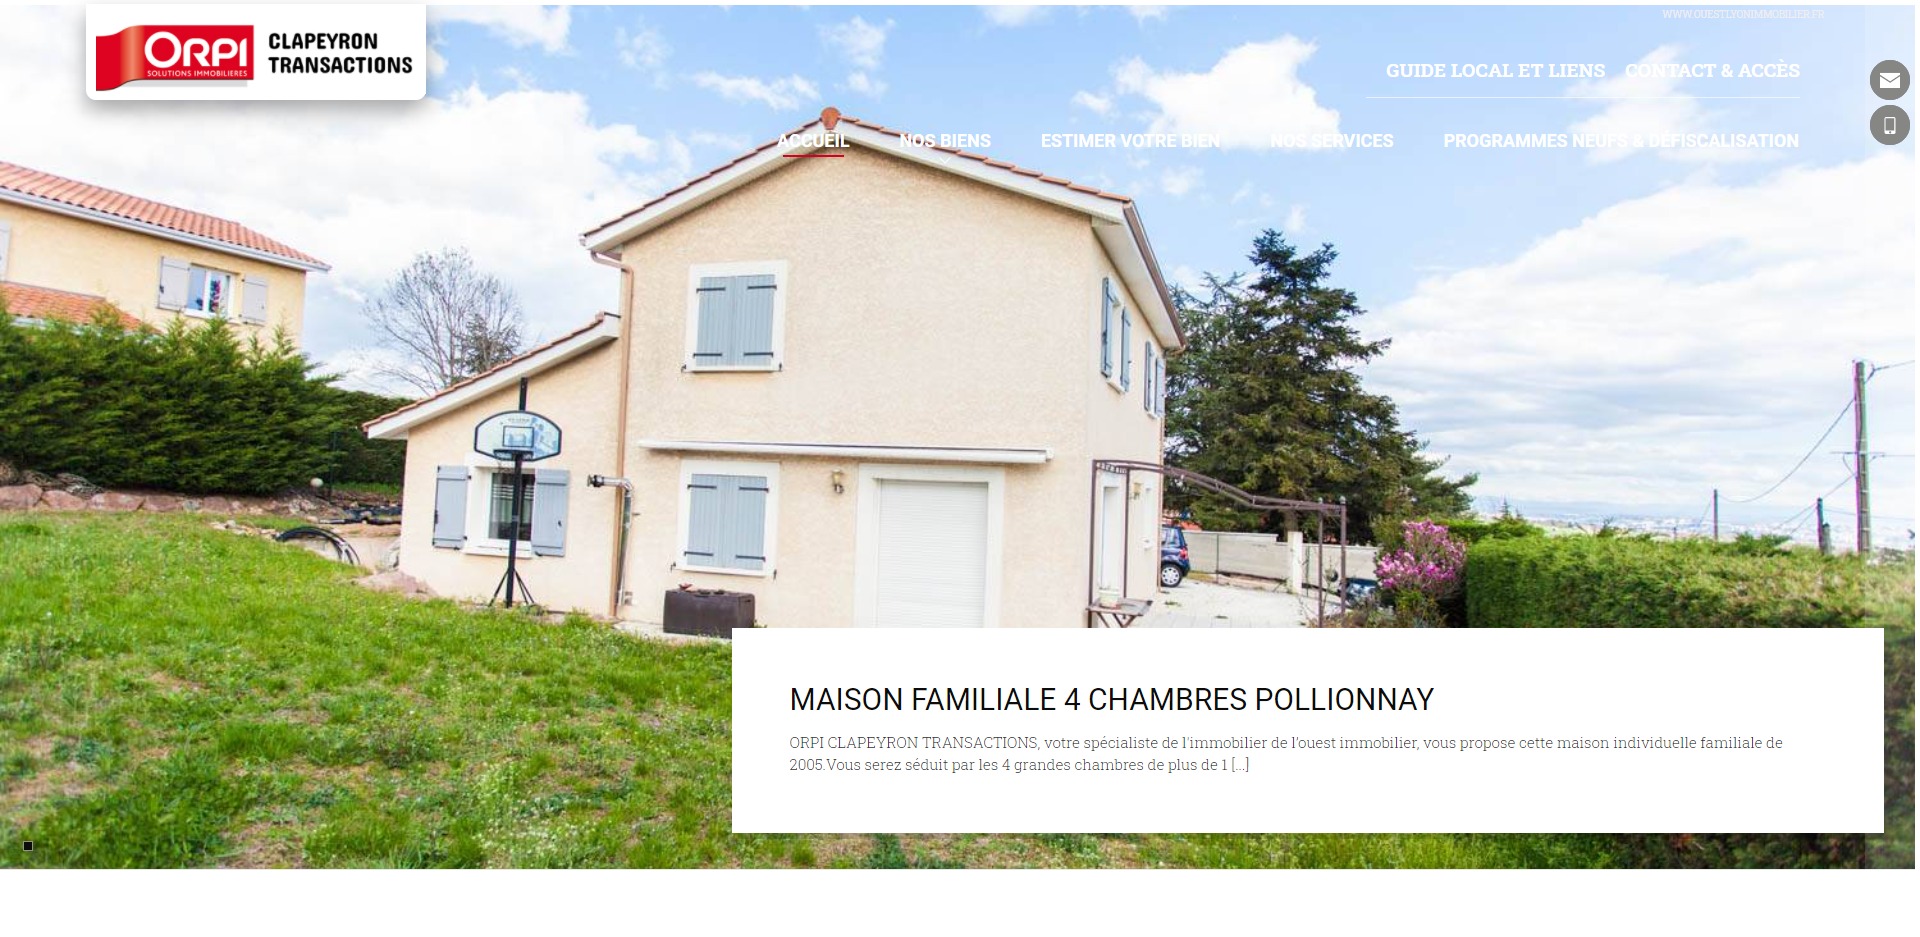 Agence immobilière Orpi CLAPEYRON TRANSACTIONS à Craponne dans l'ouest Lyonnais